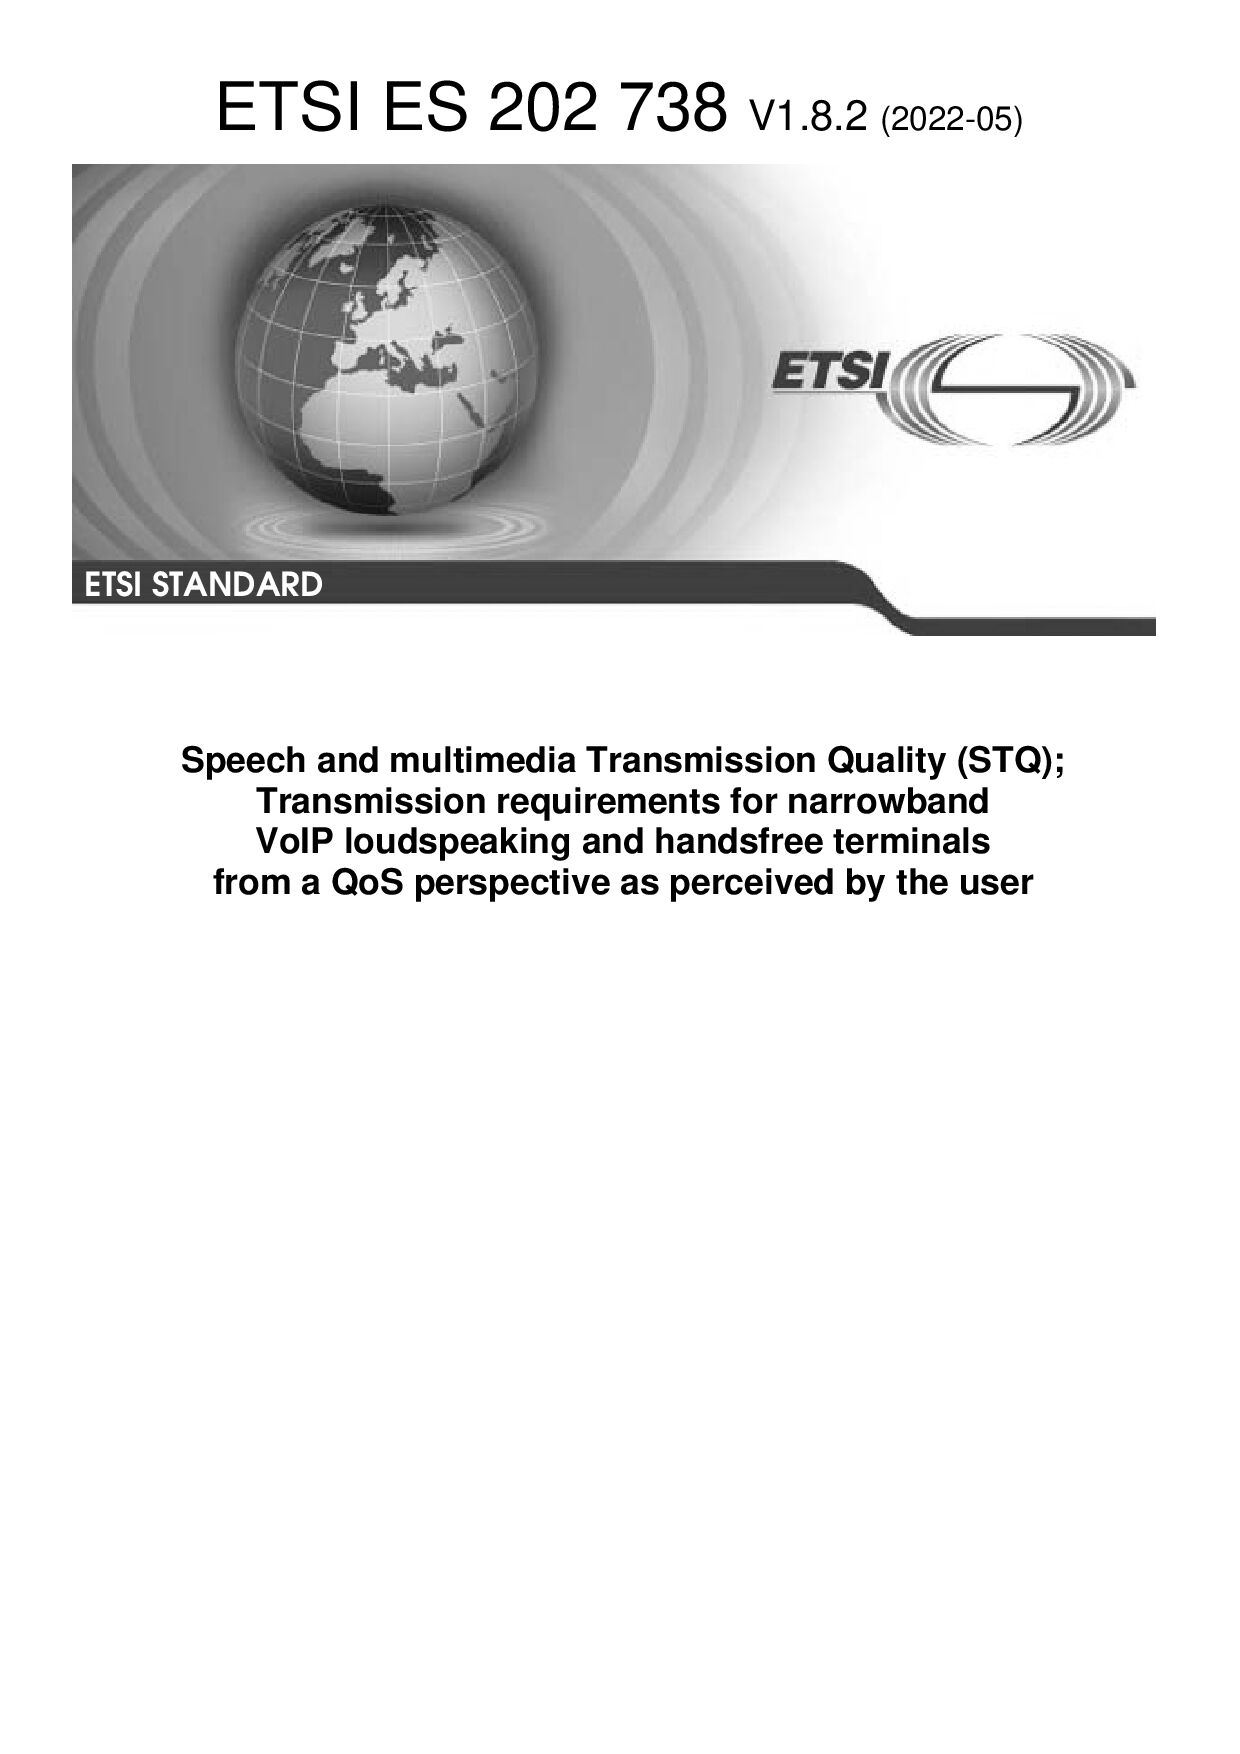 ETSI ES 202 738 V1.8.2(2022-05)封面图